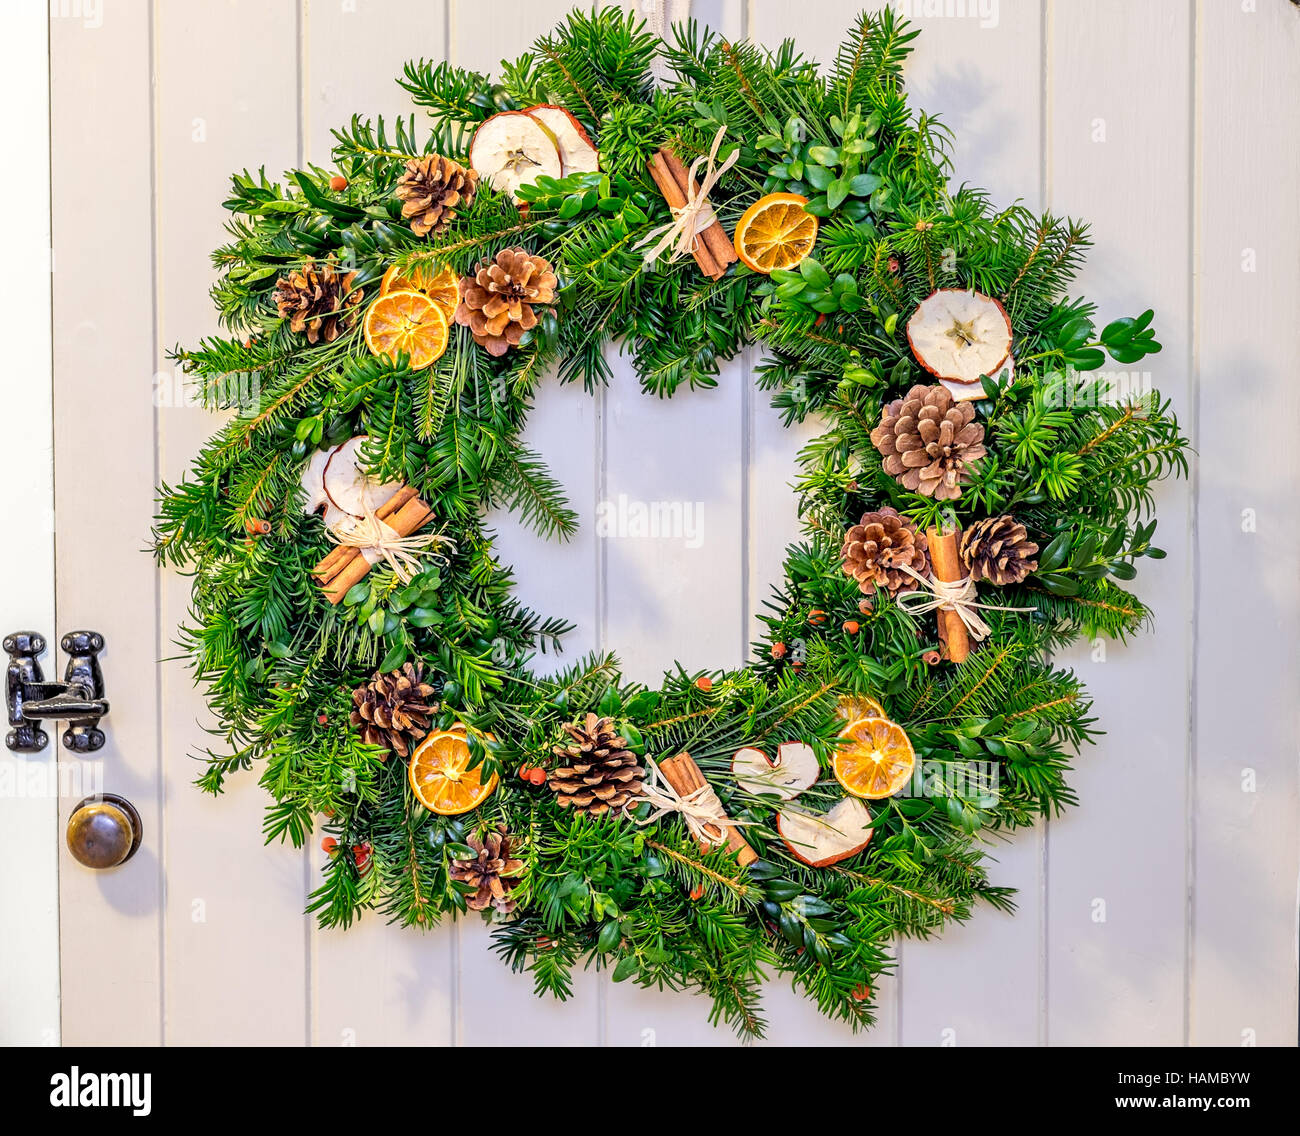 Kranz Weihnachten Holz rustikal grün Kiefer Kegel Pinecone Orangen  festlichen Urlaub glücklich Dekoration Dekor Apfel-Zimt-stick  Stockfotografie - Alamy